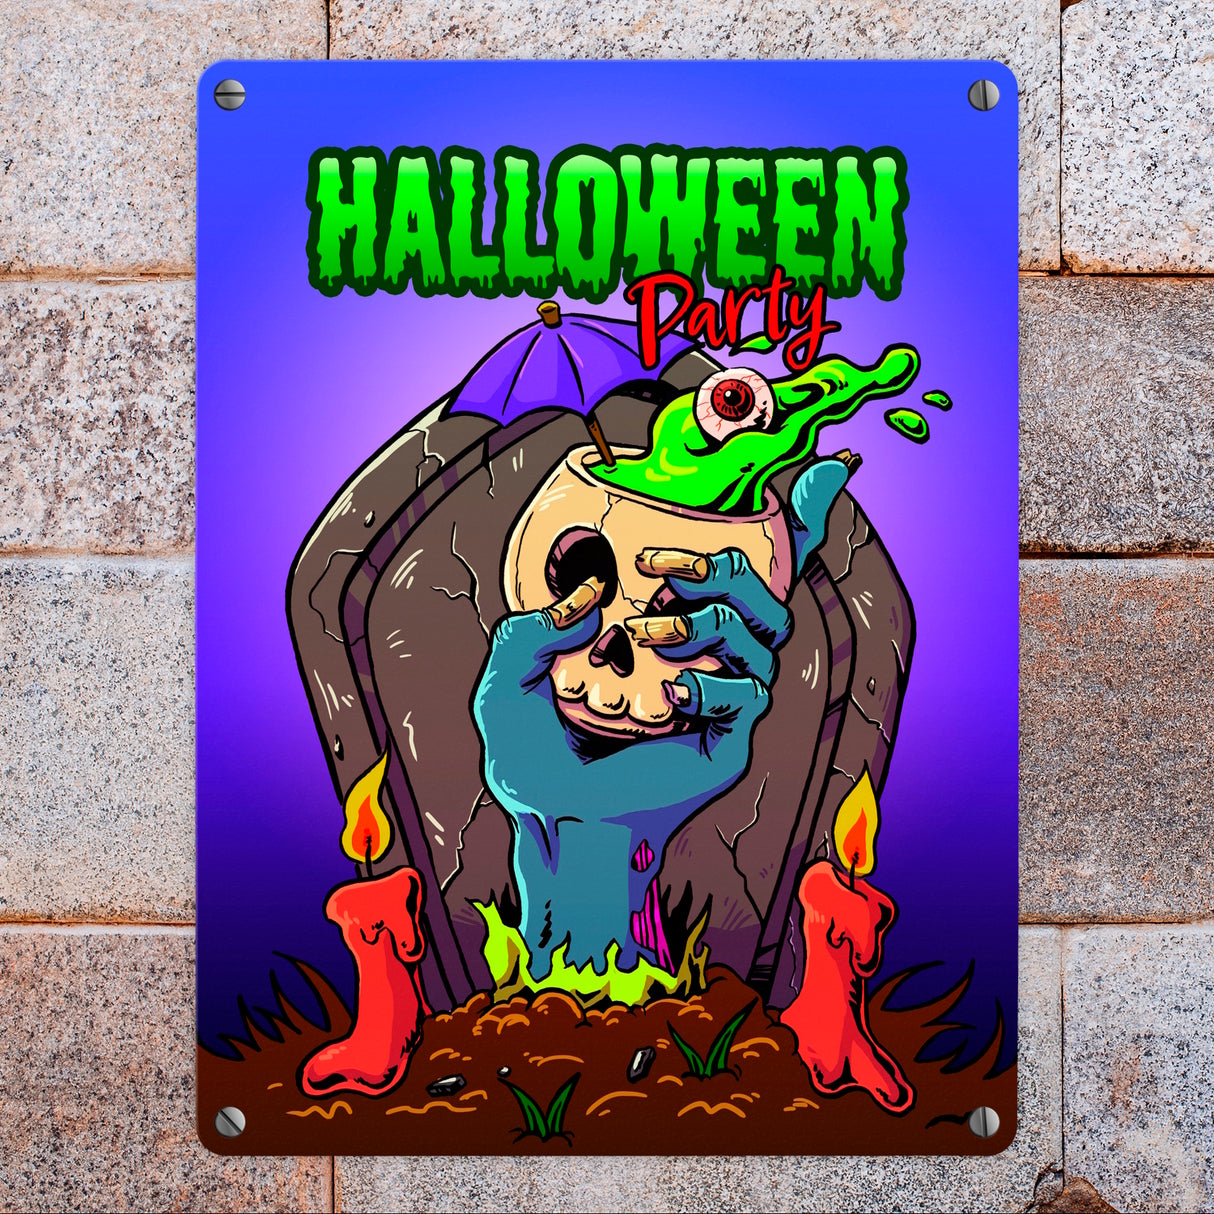 Metallschild mit Halloween Party Motiv und schauriger Zombiehand